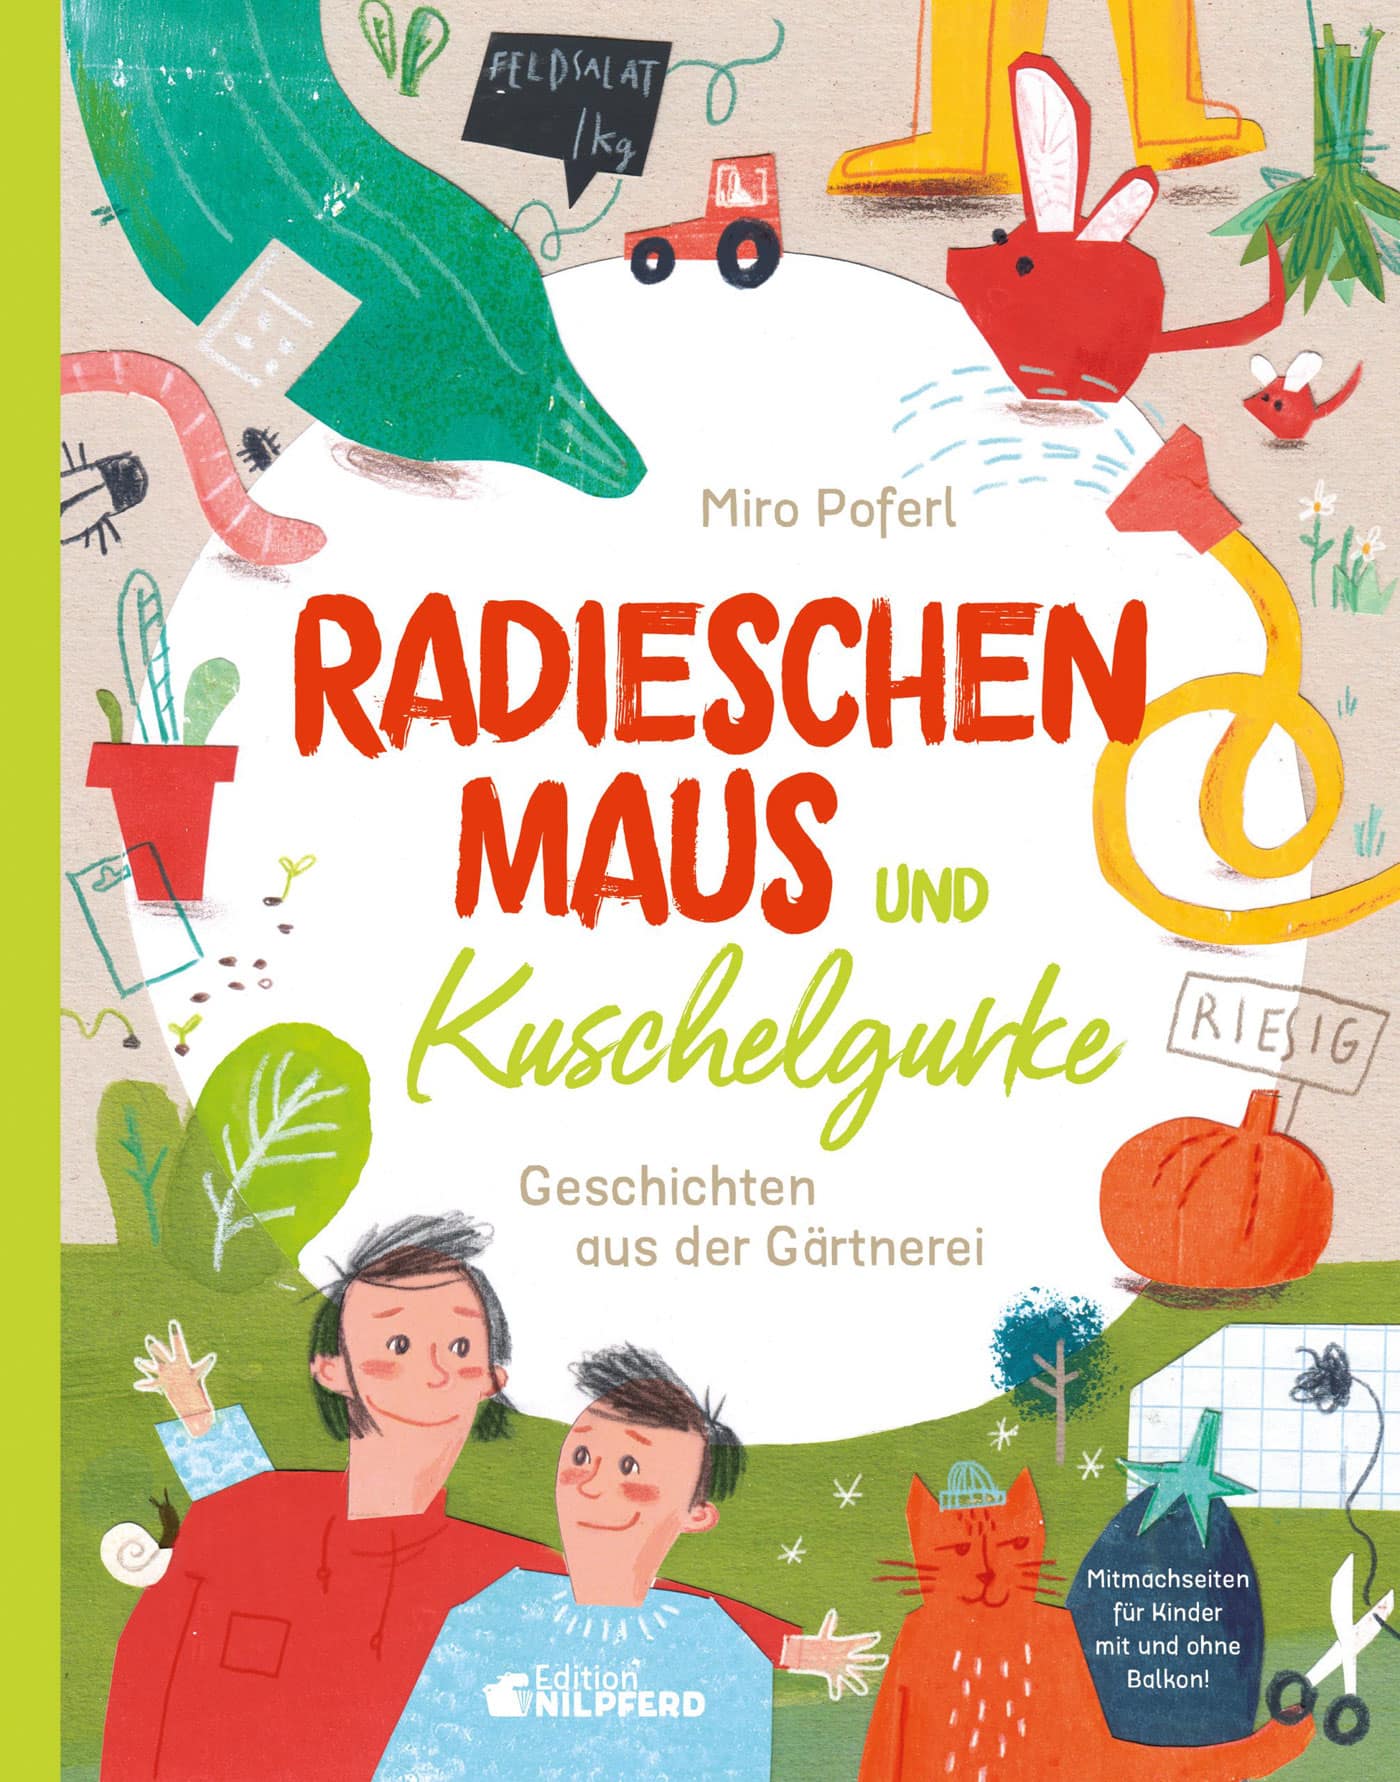 Kinderbuch Natur- und Garten: Radieschenmaus und Kuschelgurke // HIMBEER